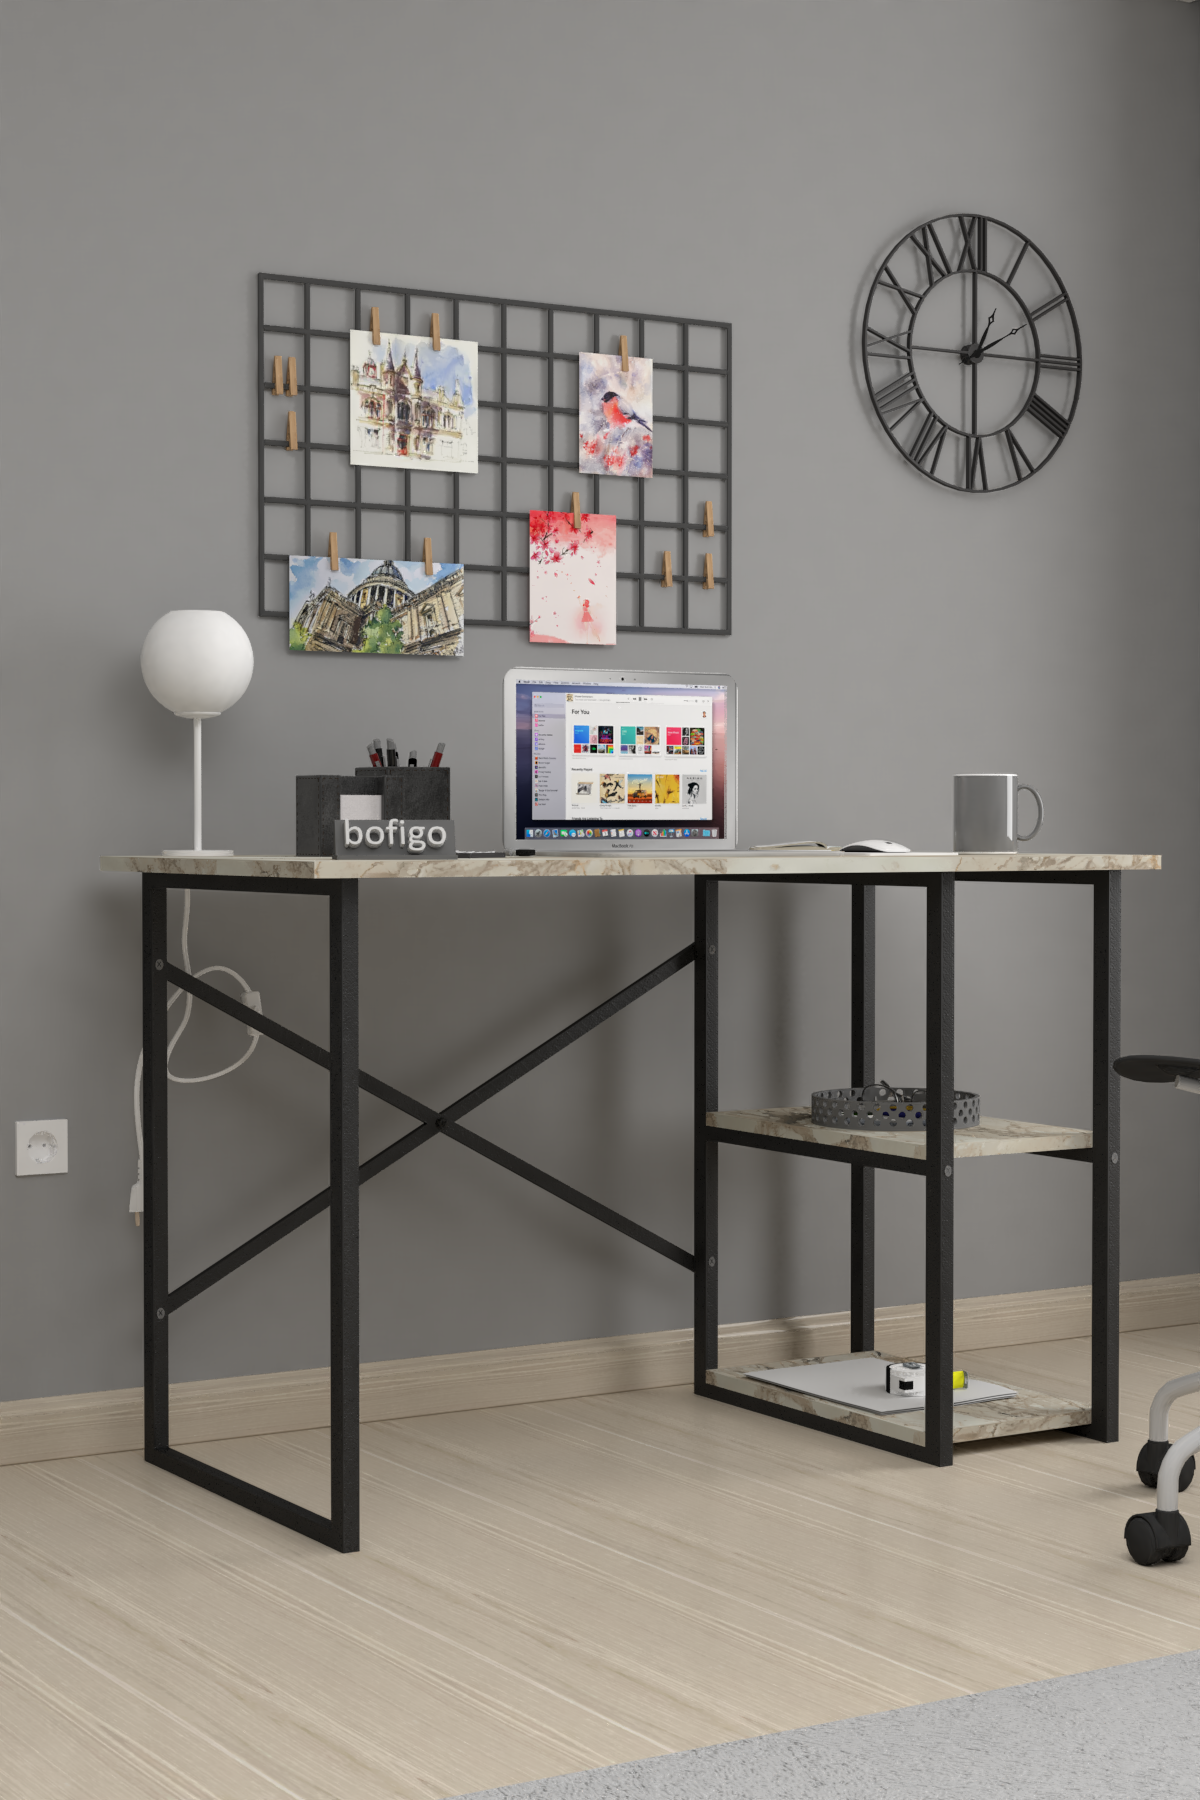 Bofigo 2 Shelf Study Desk 60x120 cm  Efes